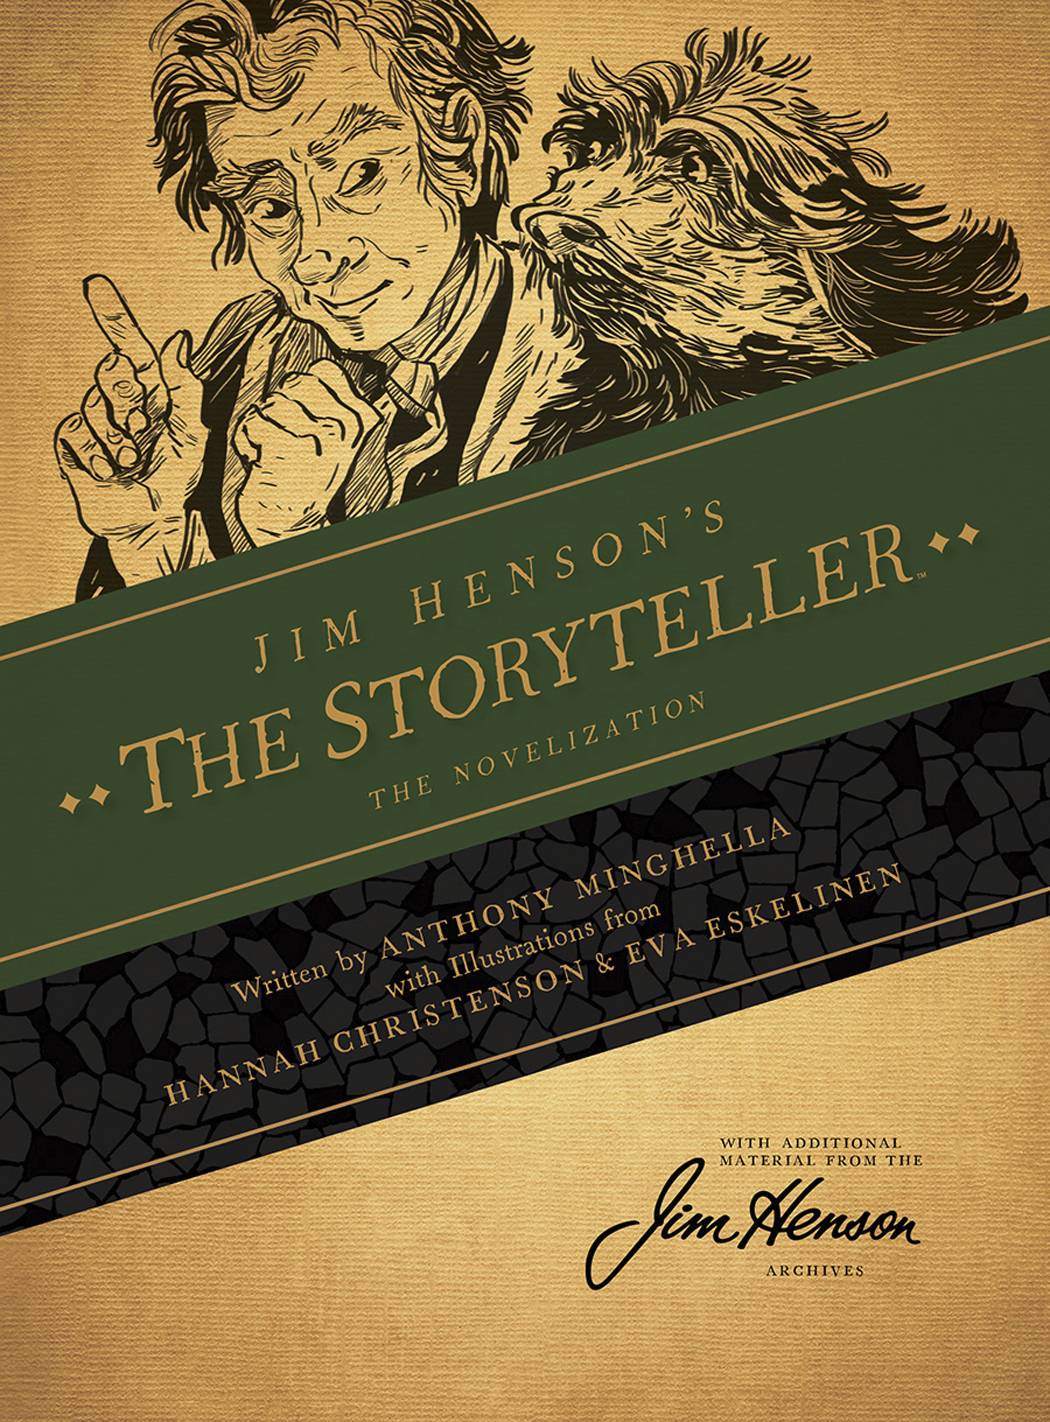 Jim Hensons Storyteller Hardcover Novel